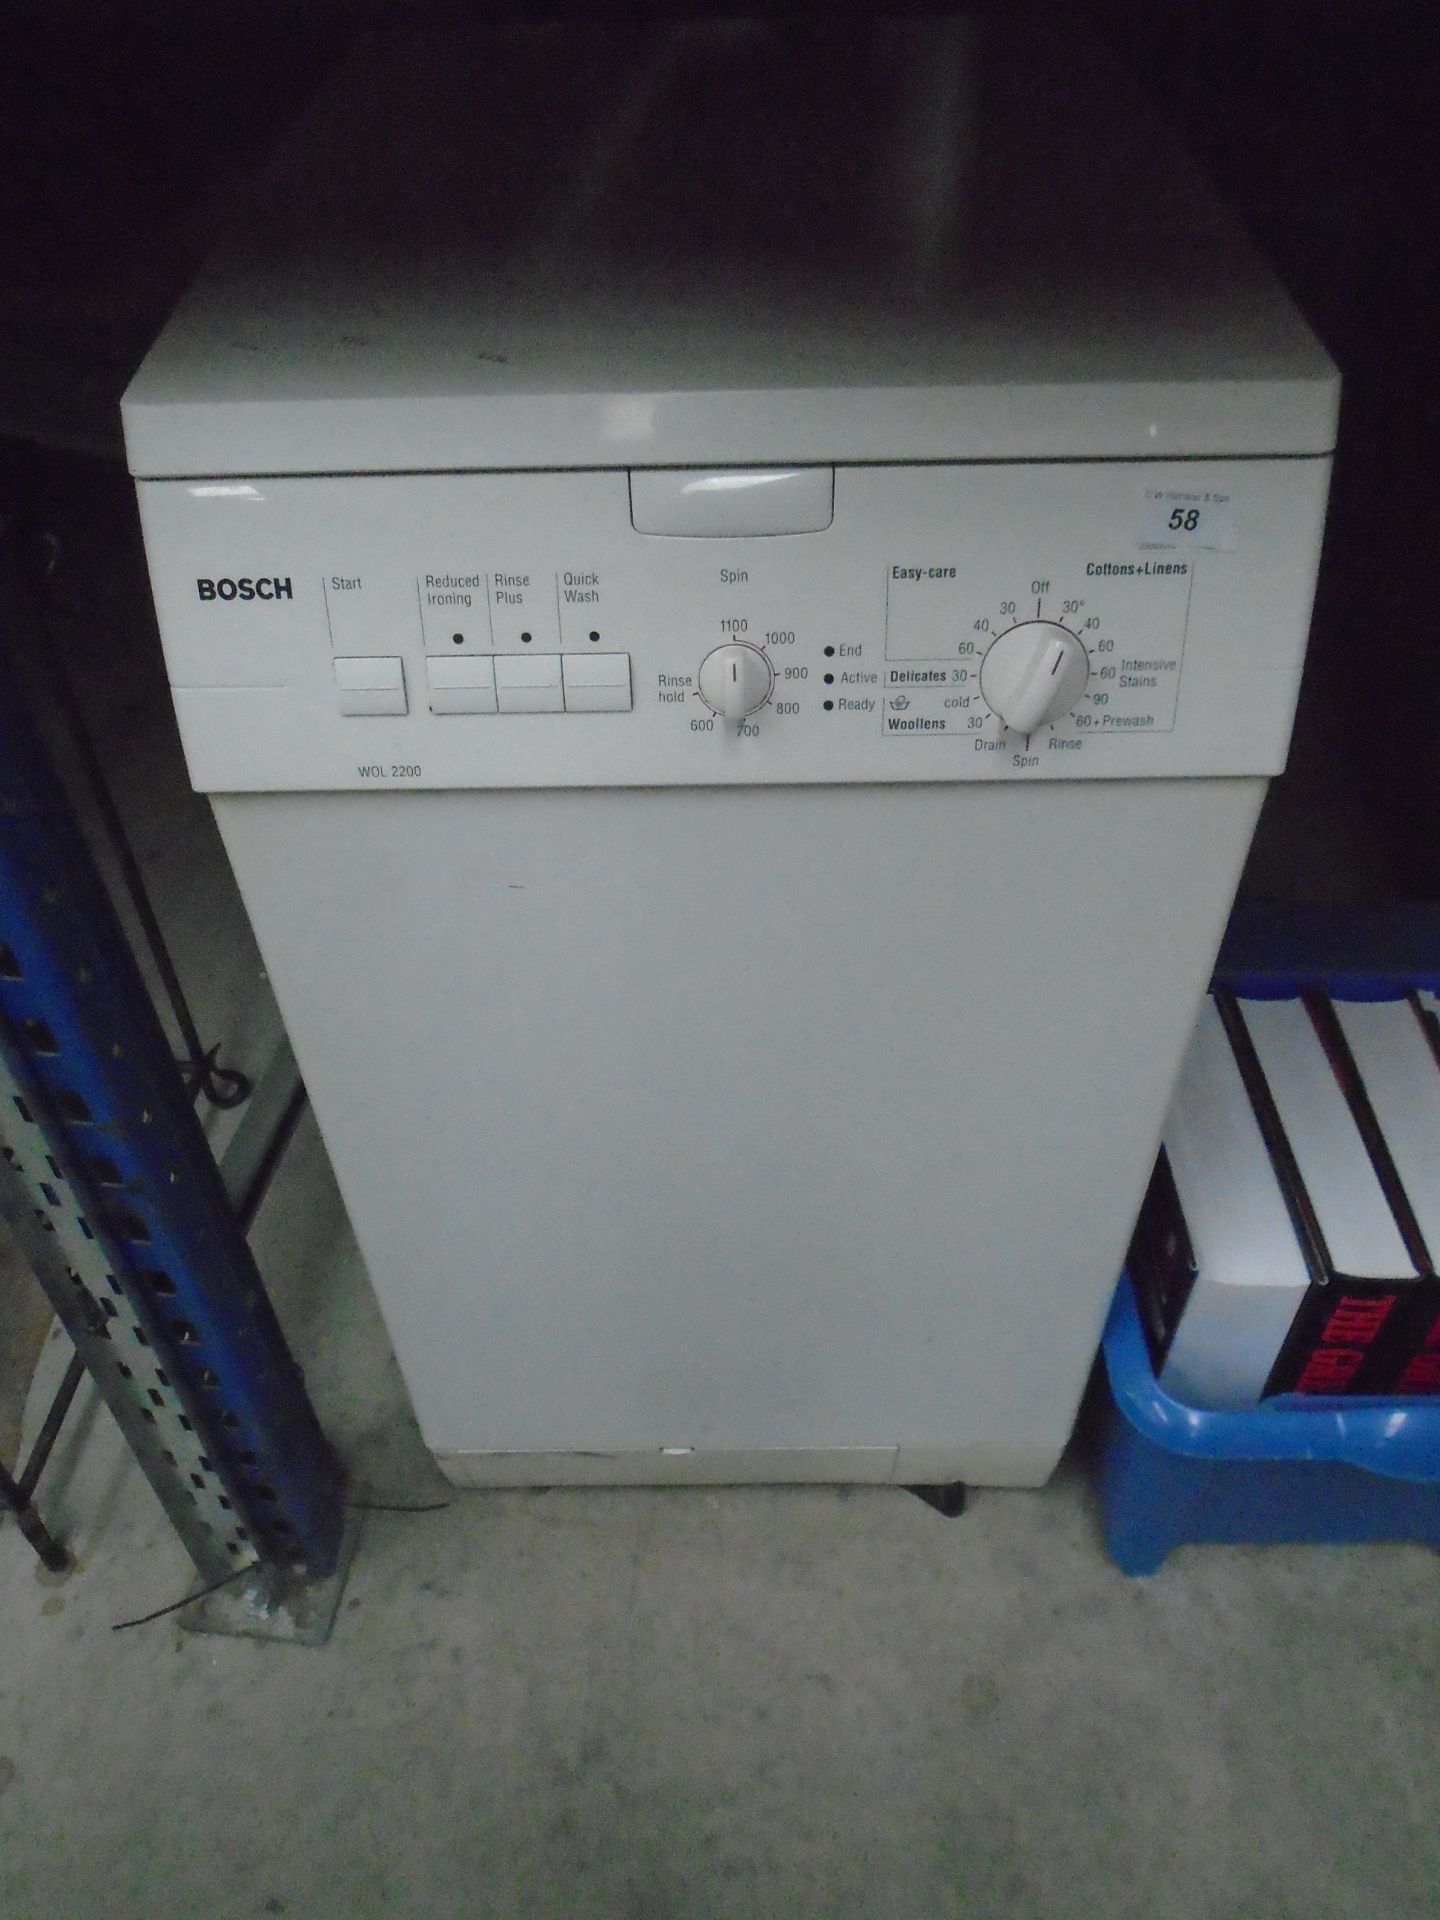 A Bosch WOL2200 dishwasher